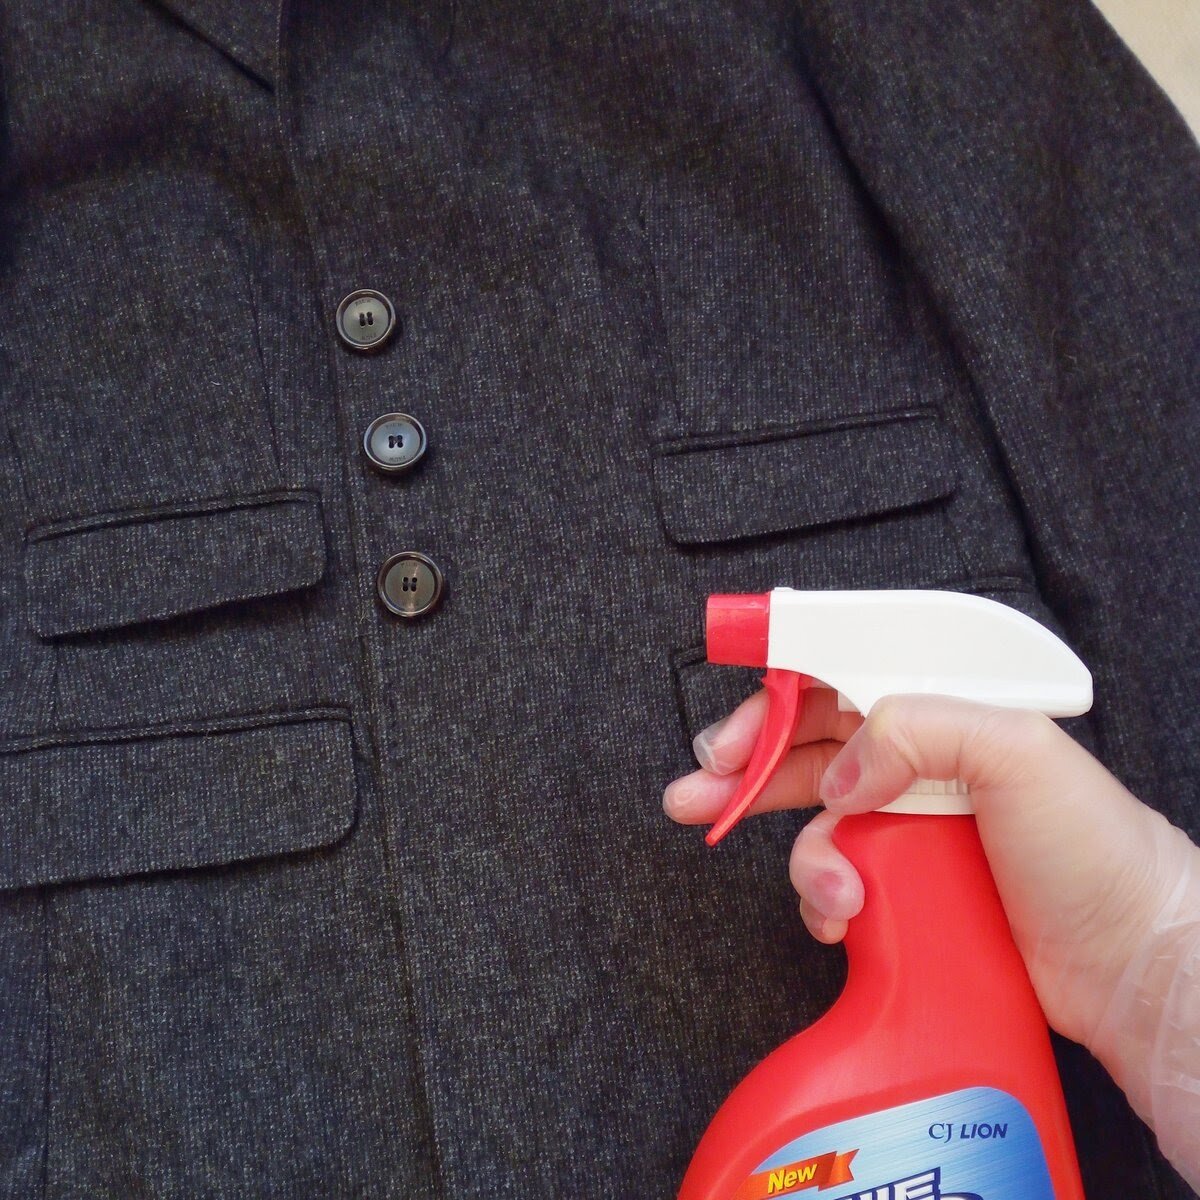 Как постирать драповое пальто: можно ли в стиральной машине-автомат, как почистить светлое изделие из драпа в домашних условиях?